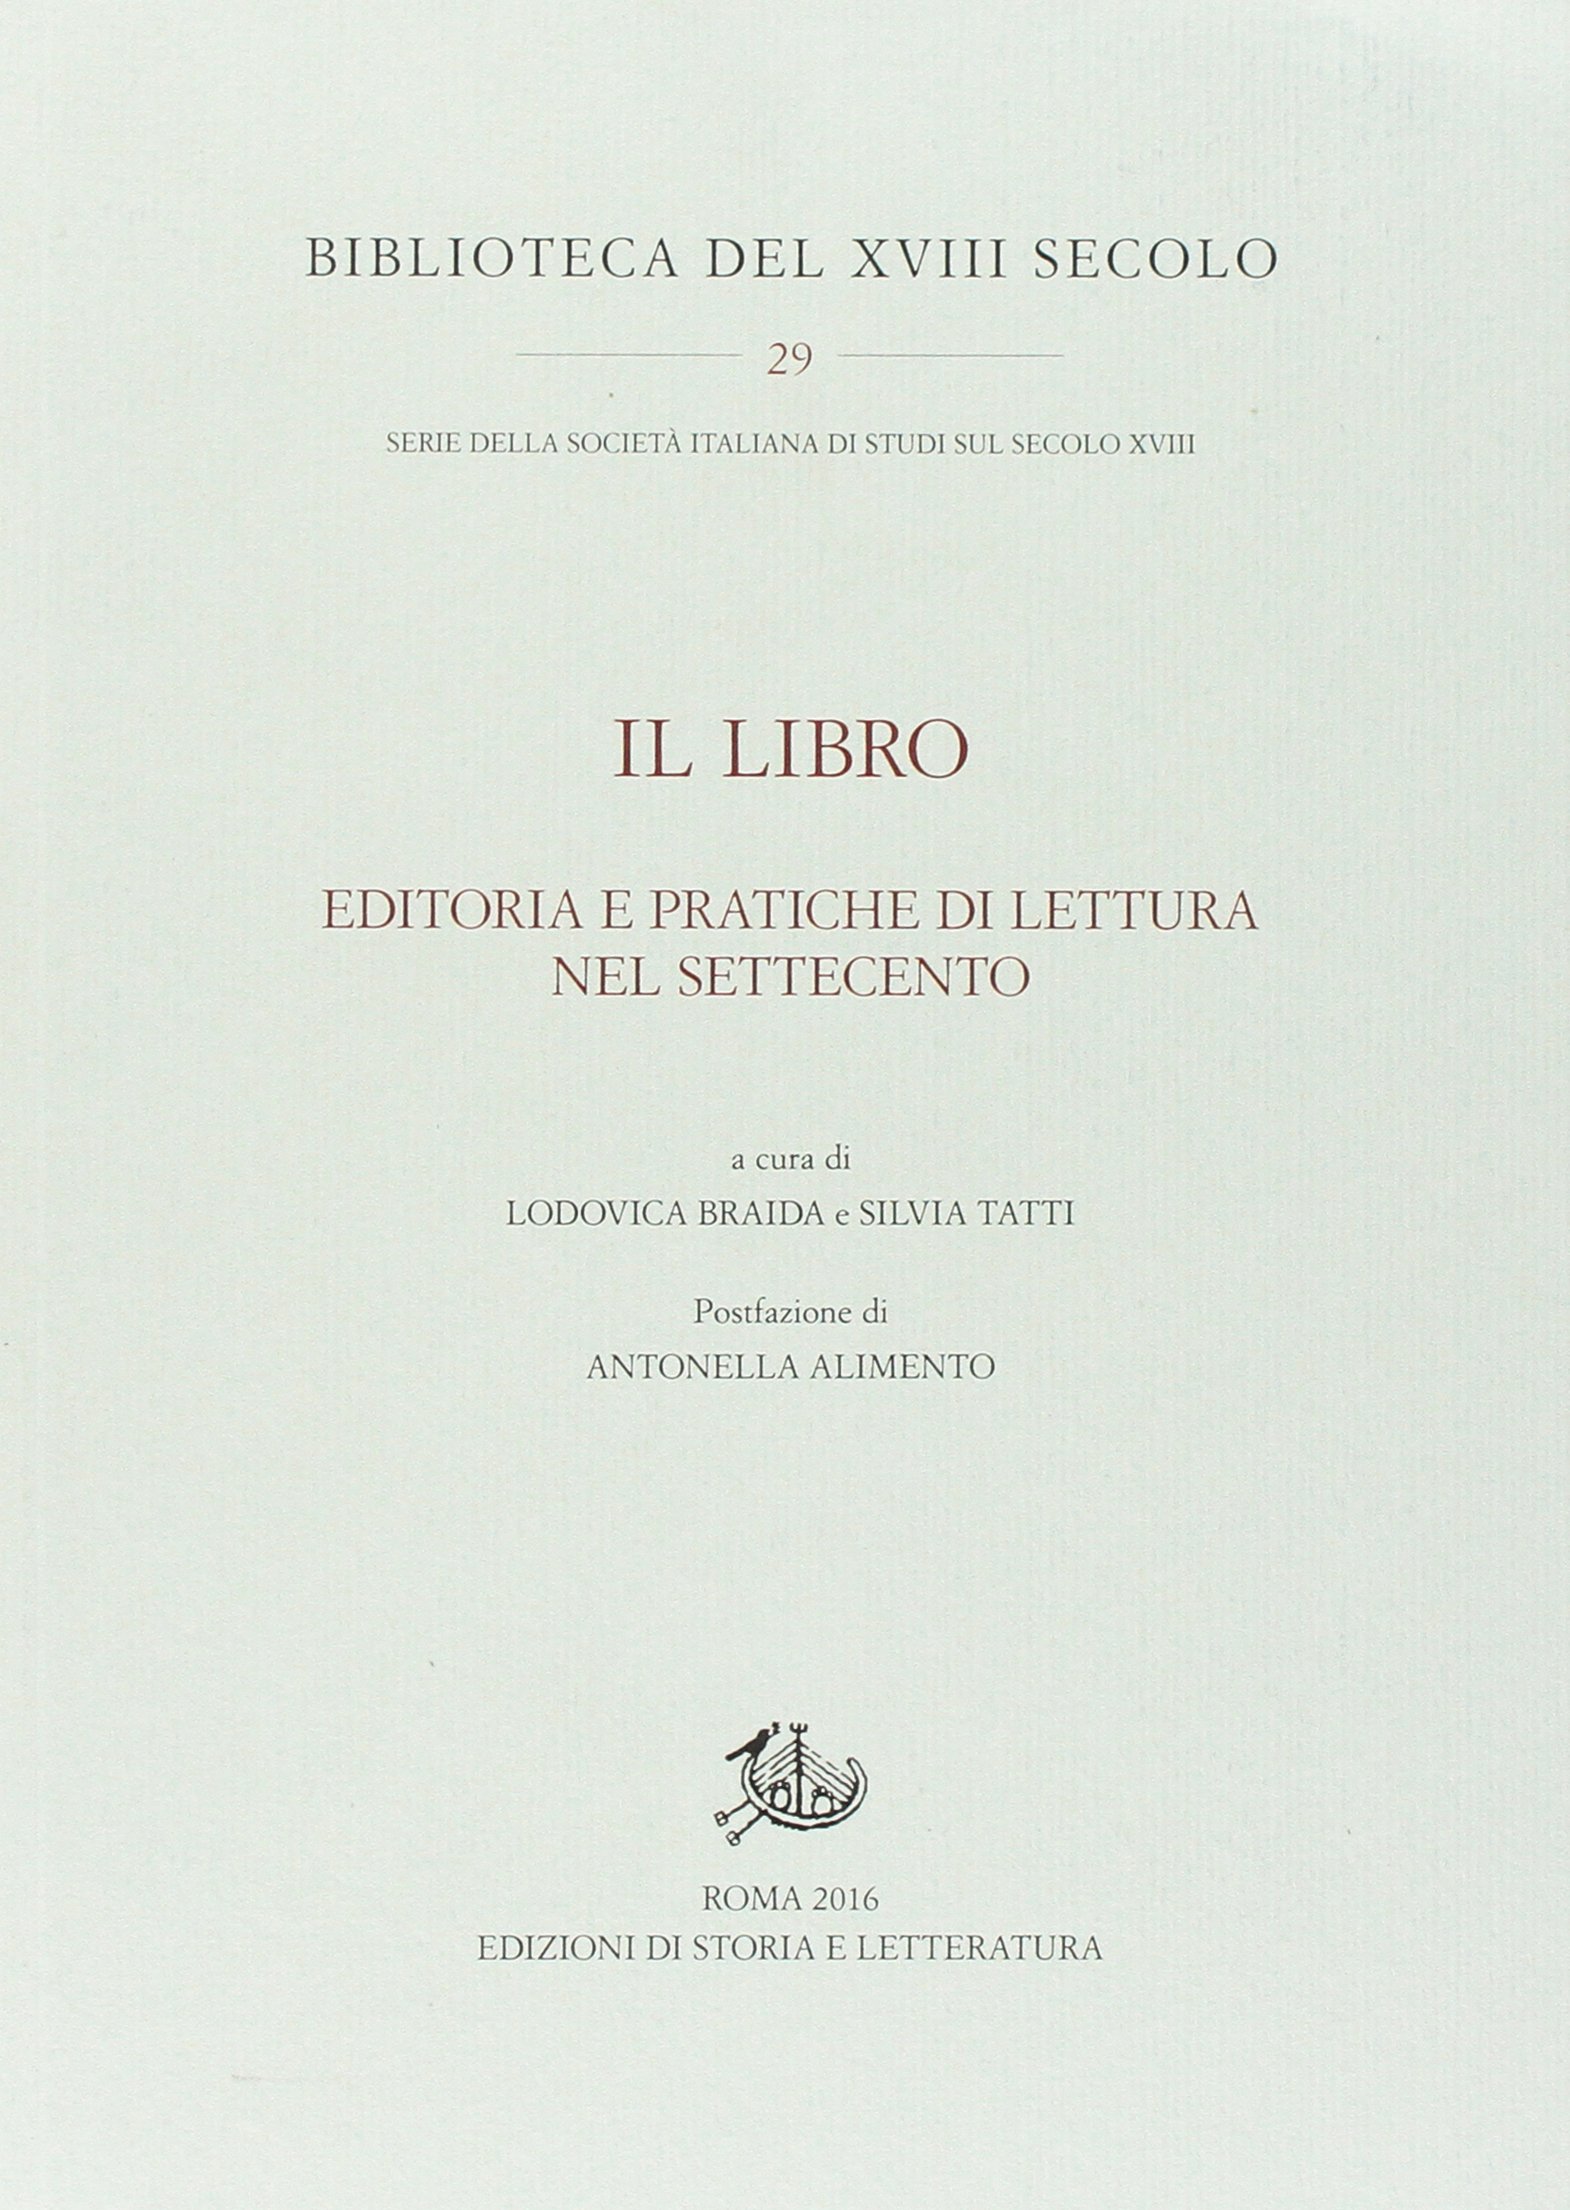 L. Braida, S. Tatti (a cura di), Il Libro. Editoria e pratiche di lettura nel settecento, Edizioni di storia e letteratura, Roma, 2016 , pp. 433.